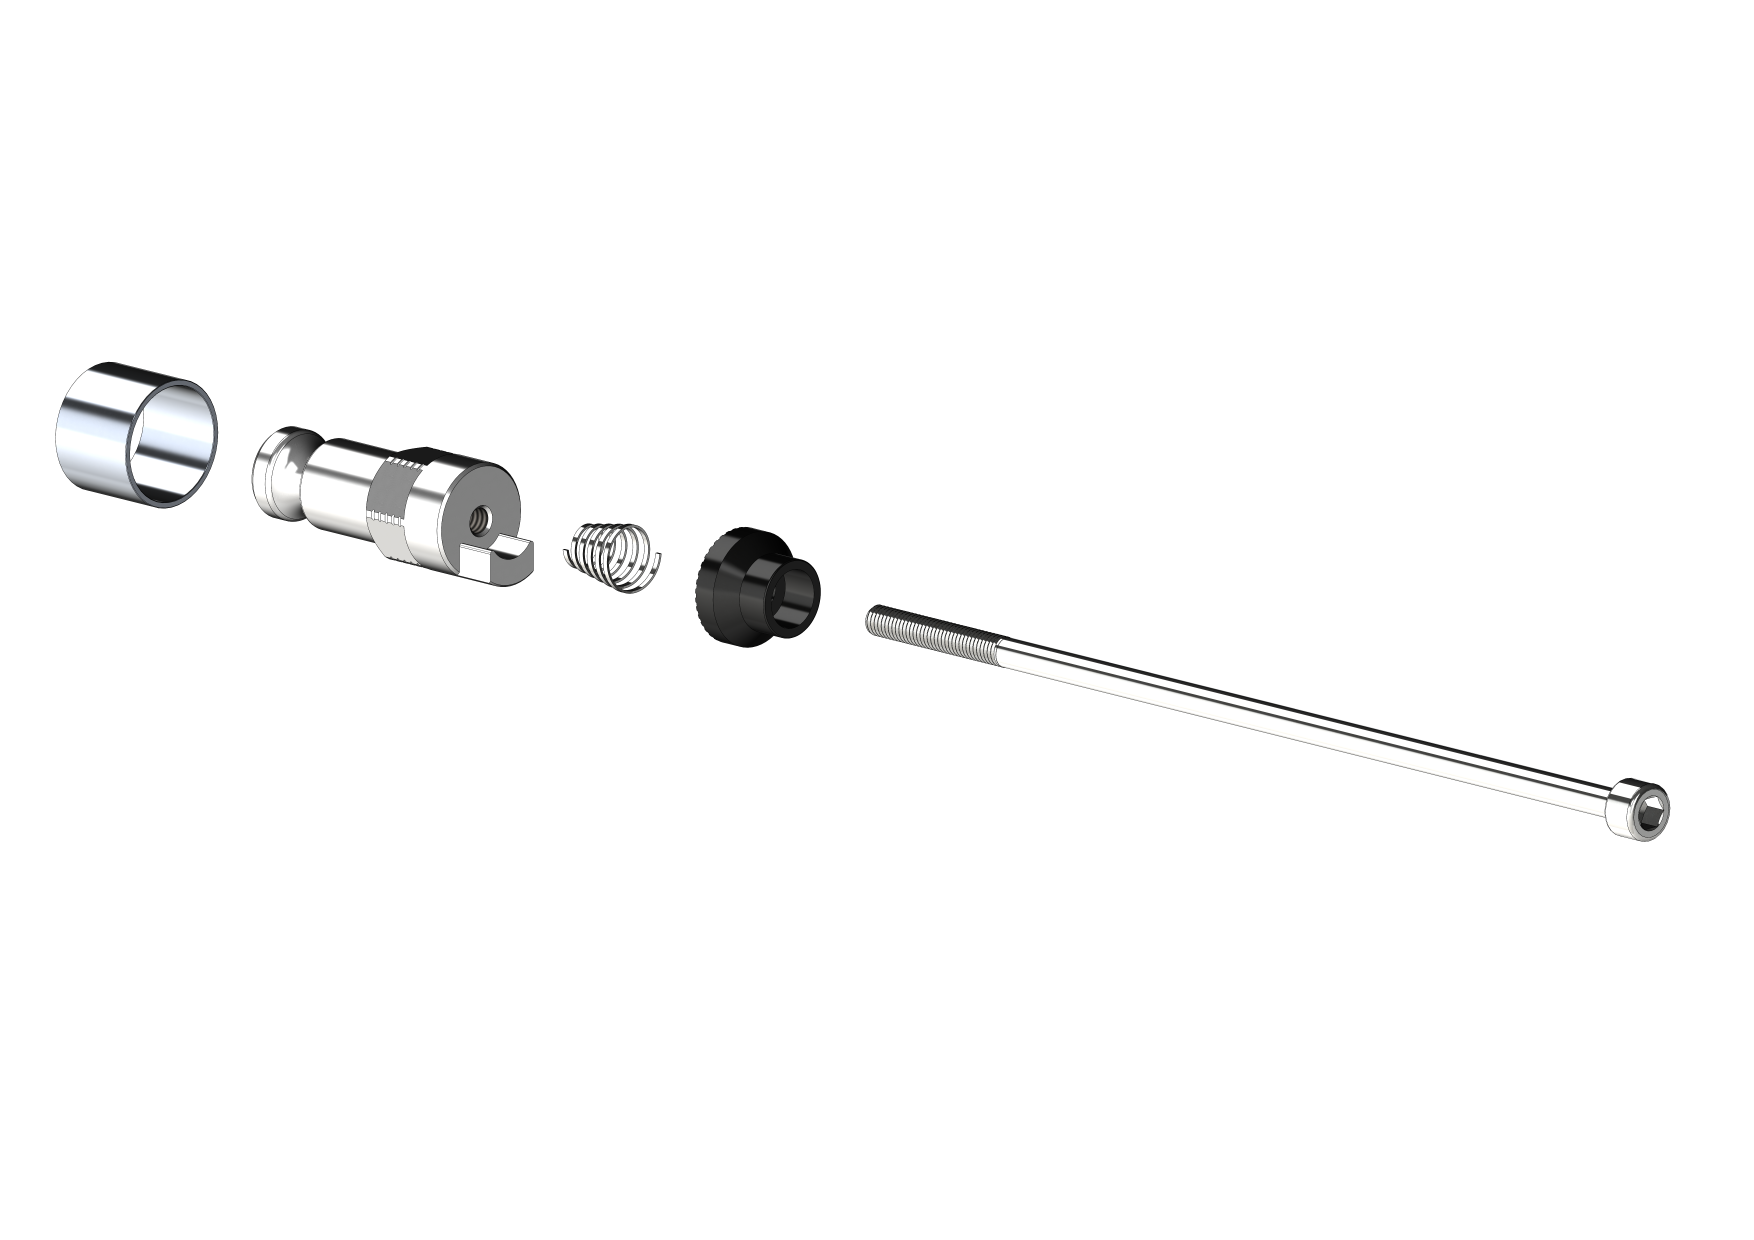 Schnellspannachse mit Adapter (für Croozer Anhänger ab 2018 ) - Klemmlänge 143mm - 153mm